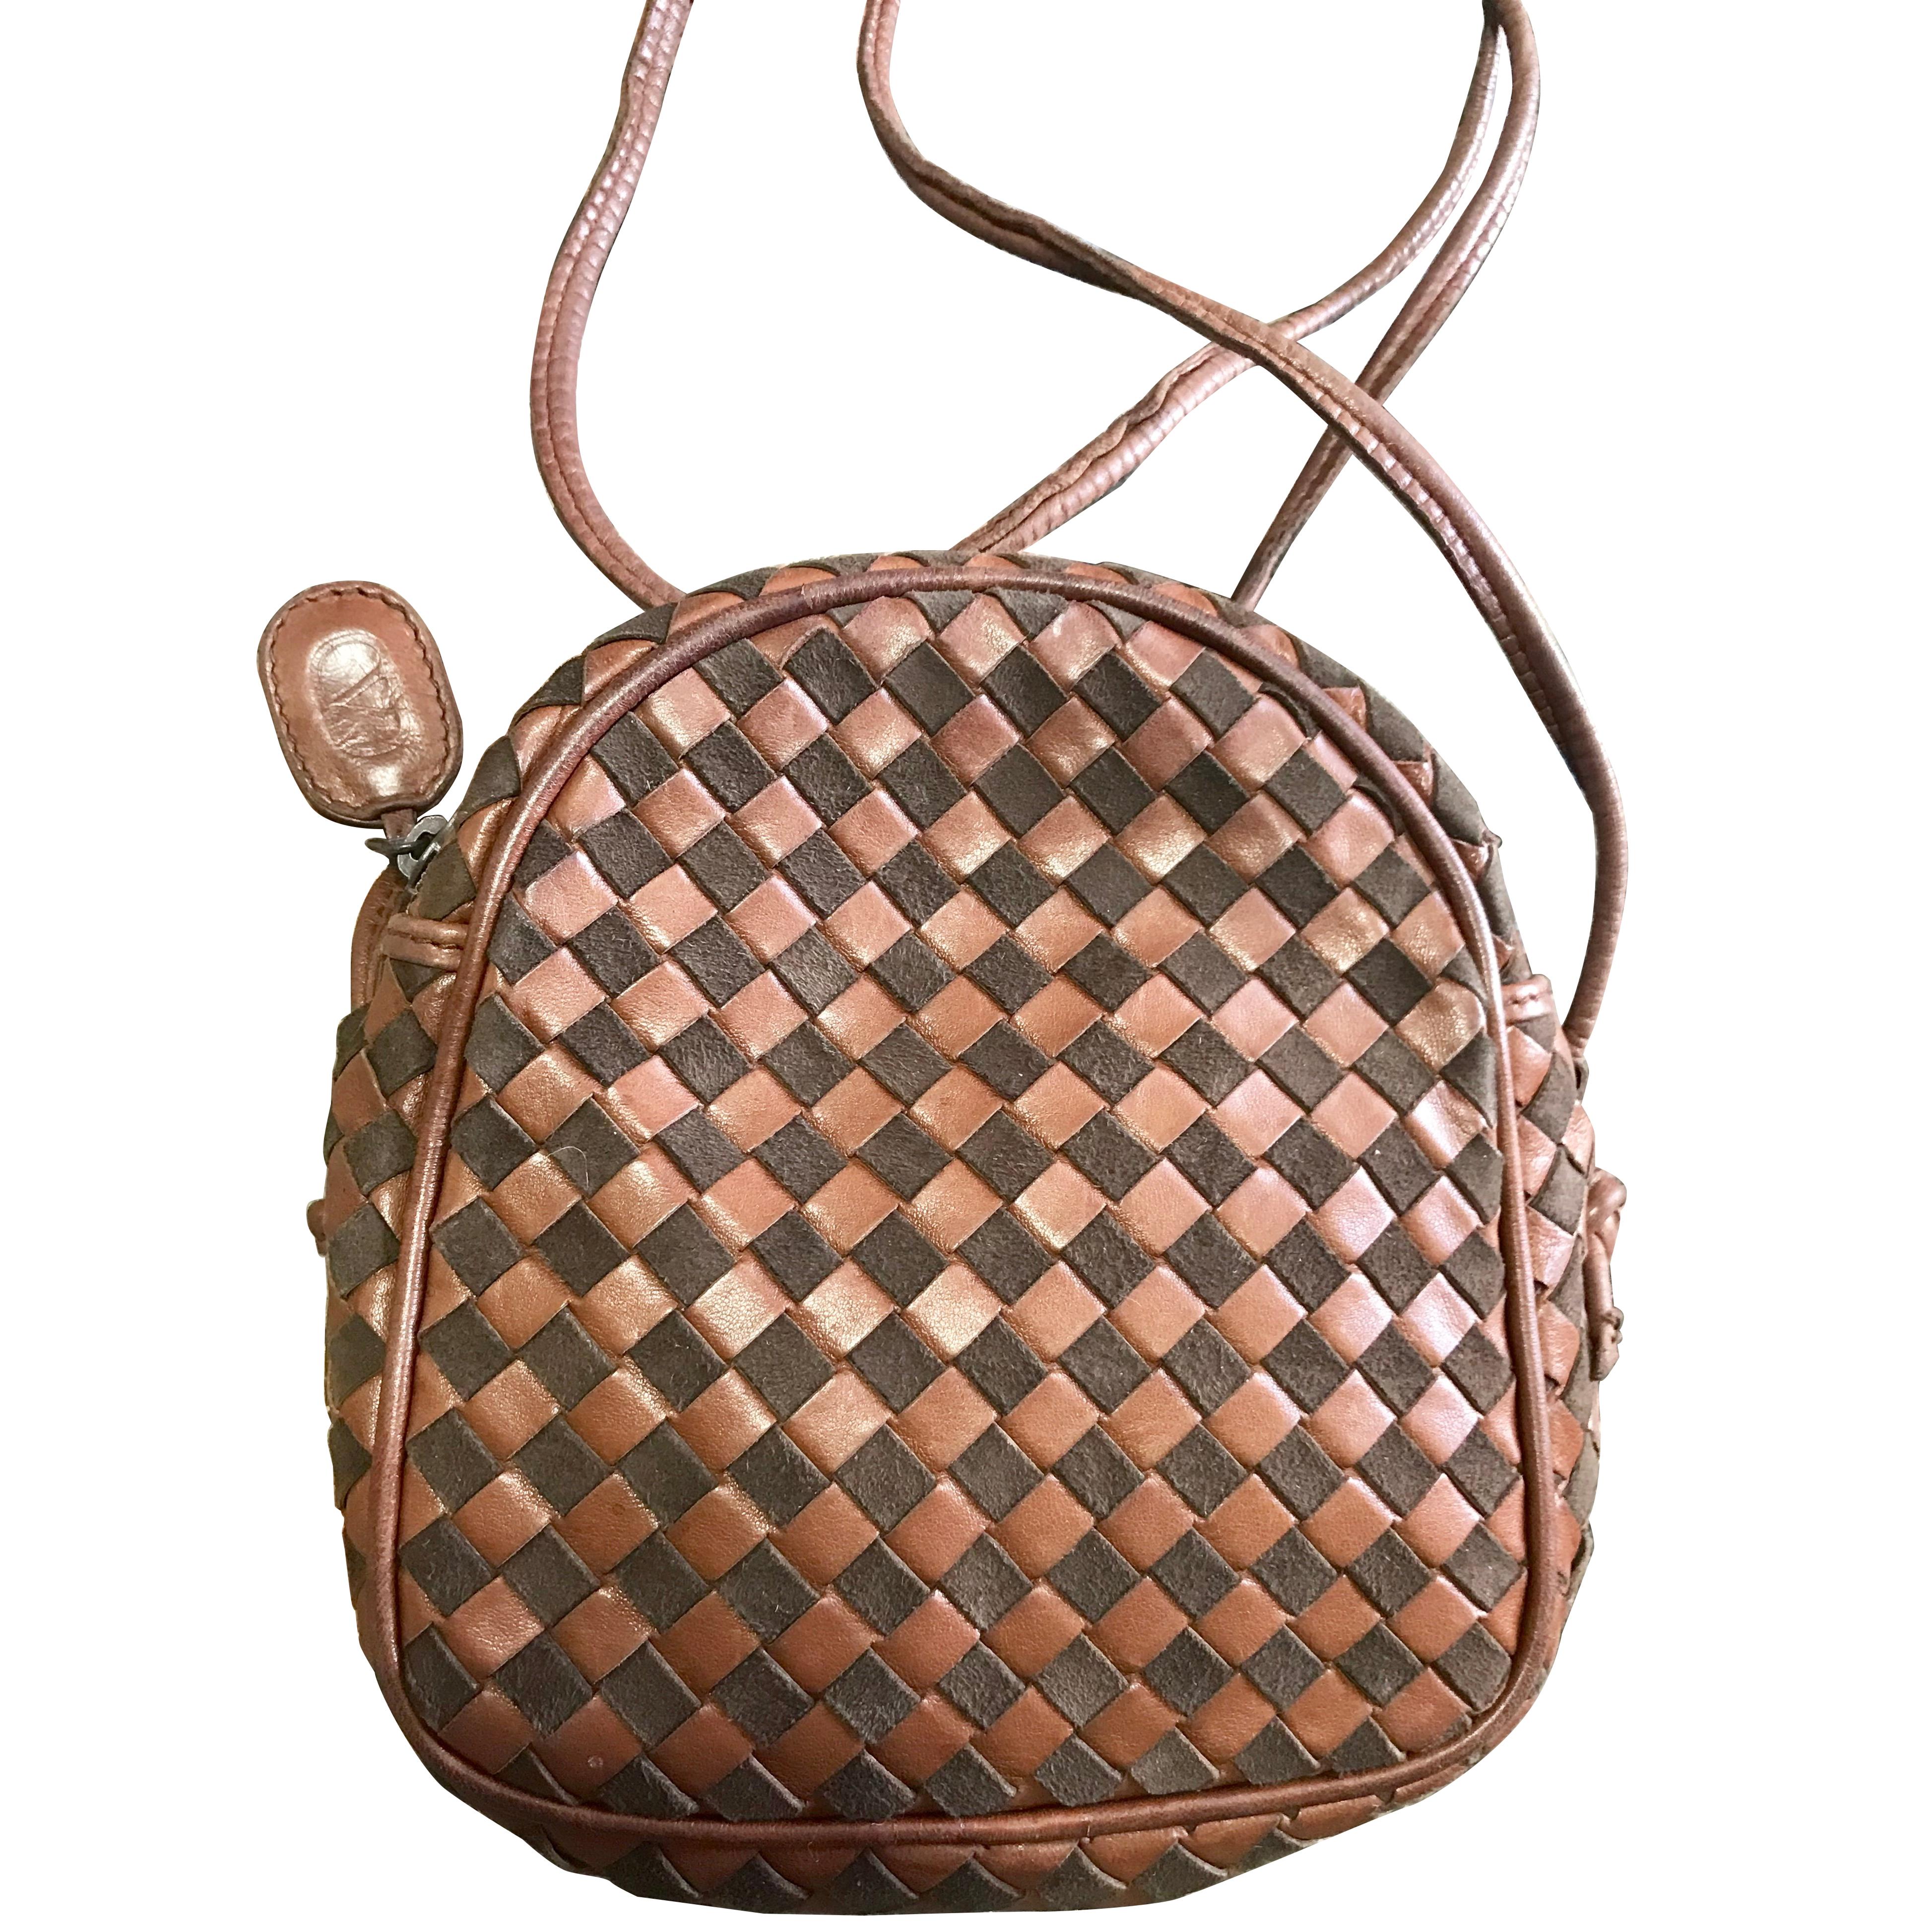 Vintage Valentino Garavani brown intrecciato mini pouch style shoulder bag. For Sale